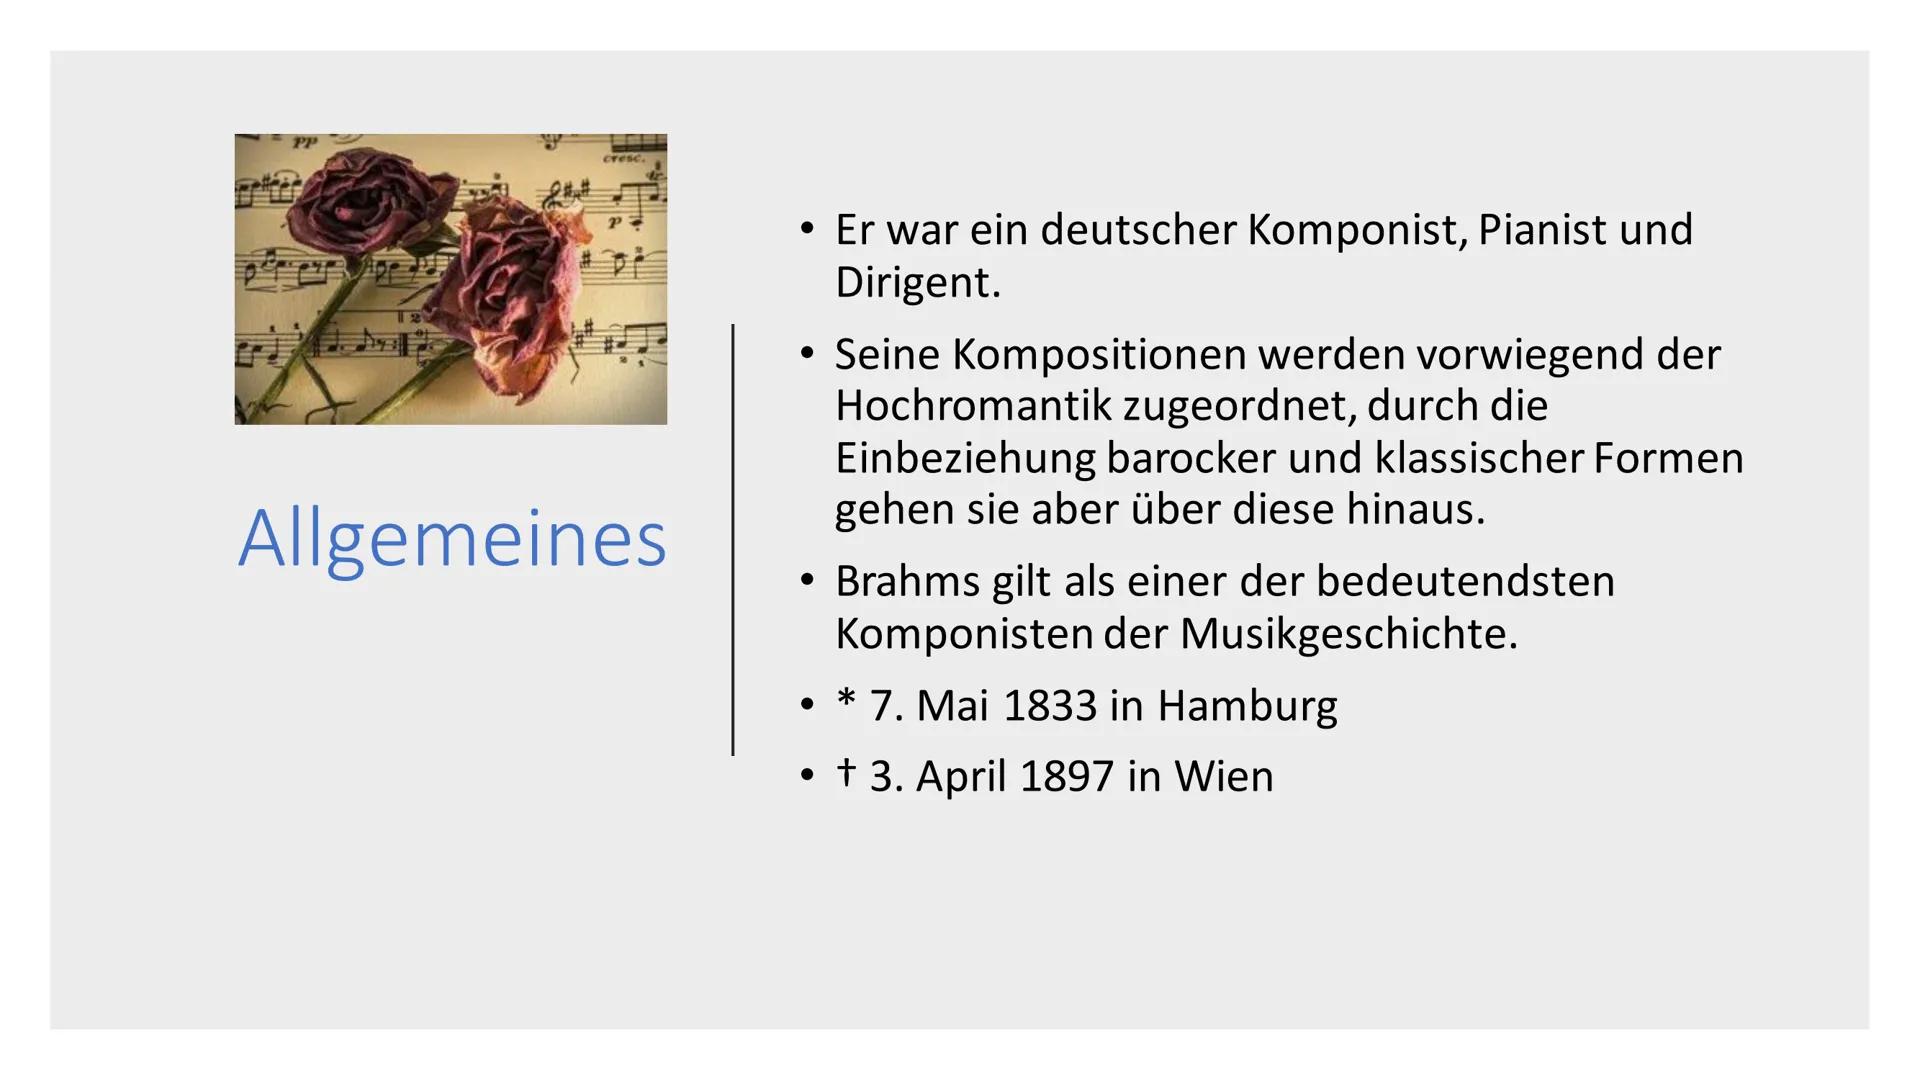 Johannes
Brahms Inhalt
Allgemeines
Kindheit
• Karriere
Umzug nach Wien
Werke
• Auszeichnungen
● PP
cresc.
1
HT=
THE
Faab
4.
TN-
Allgemeines
